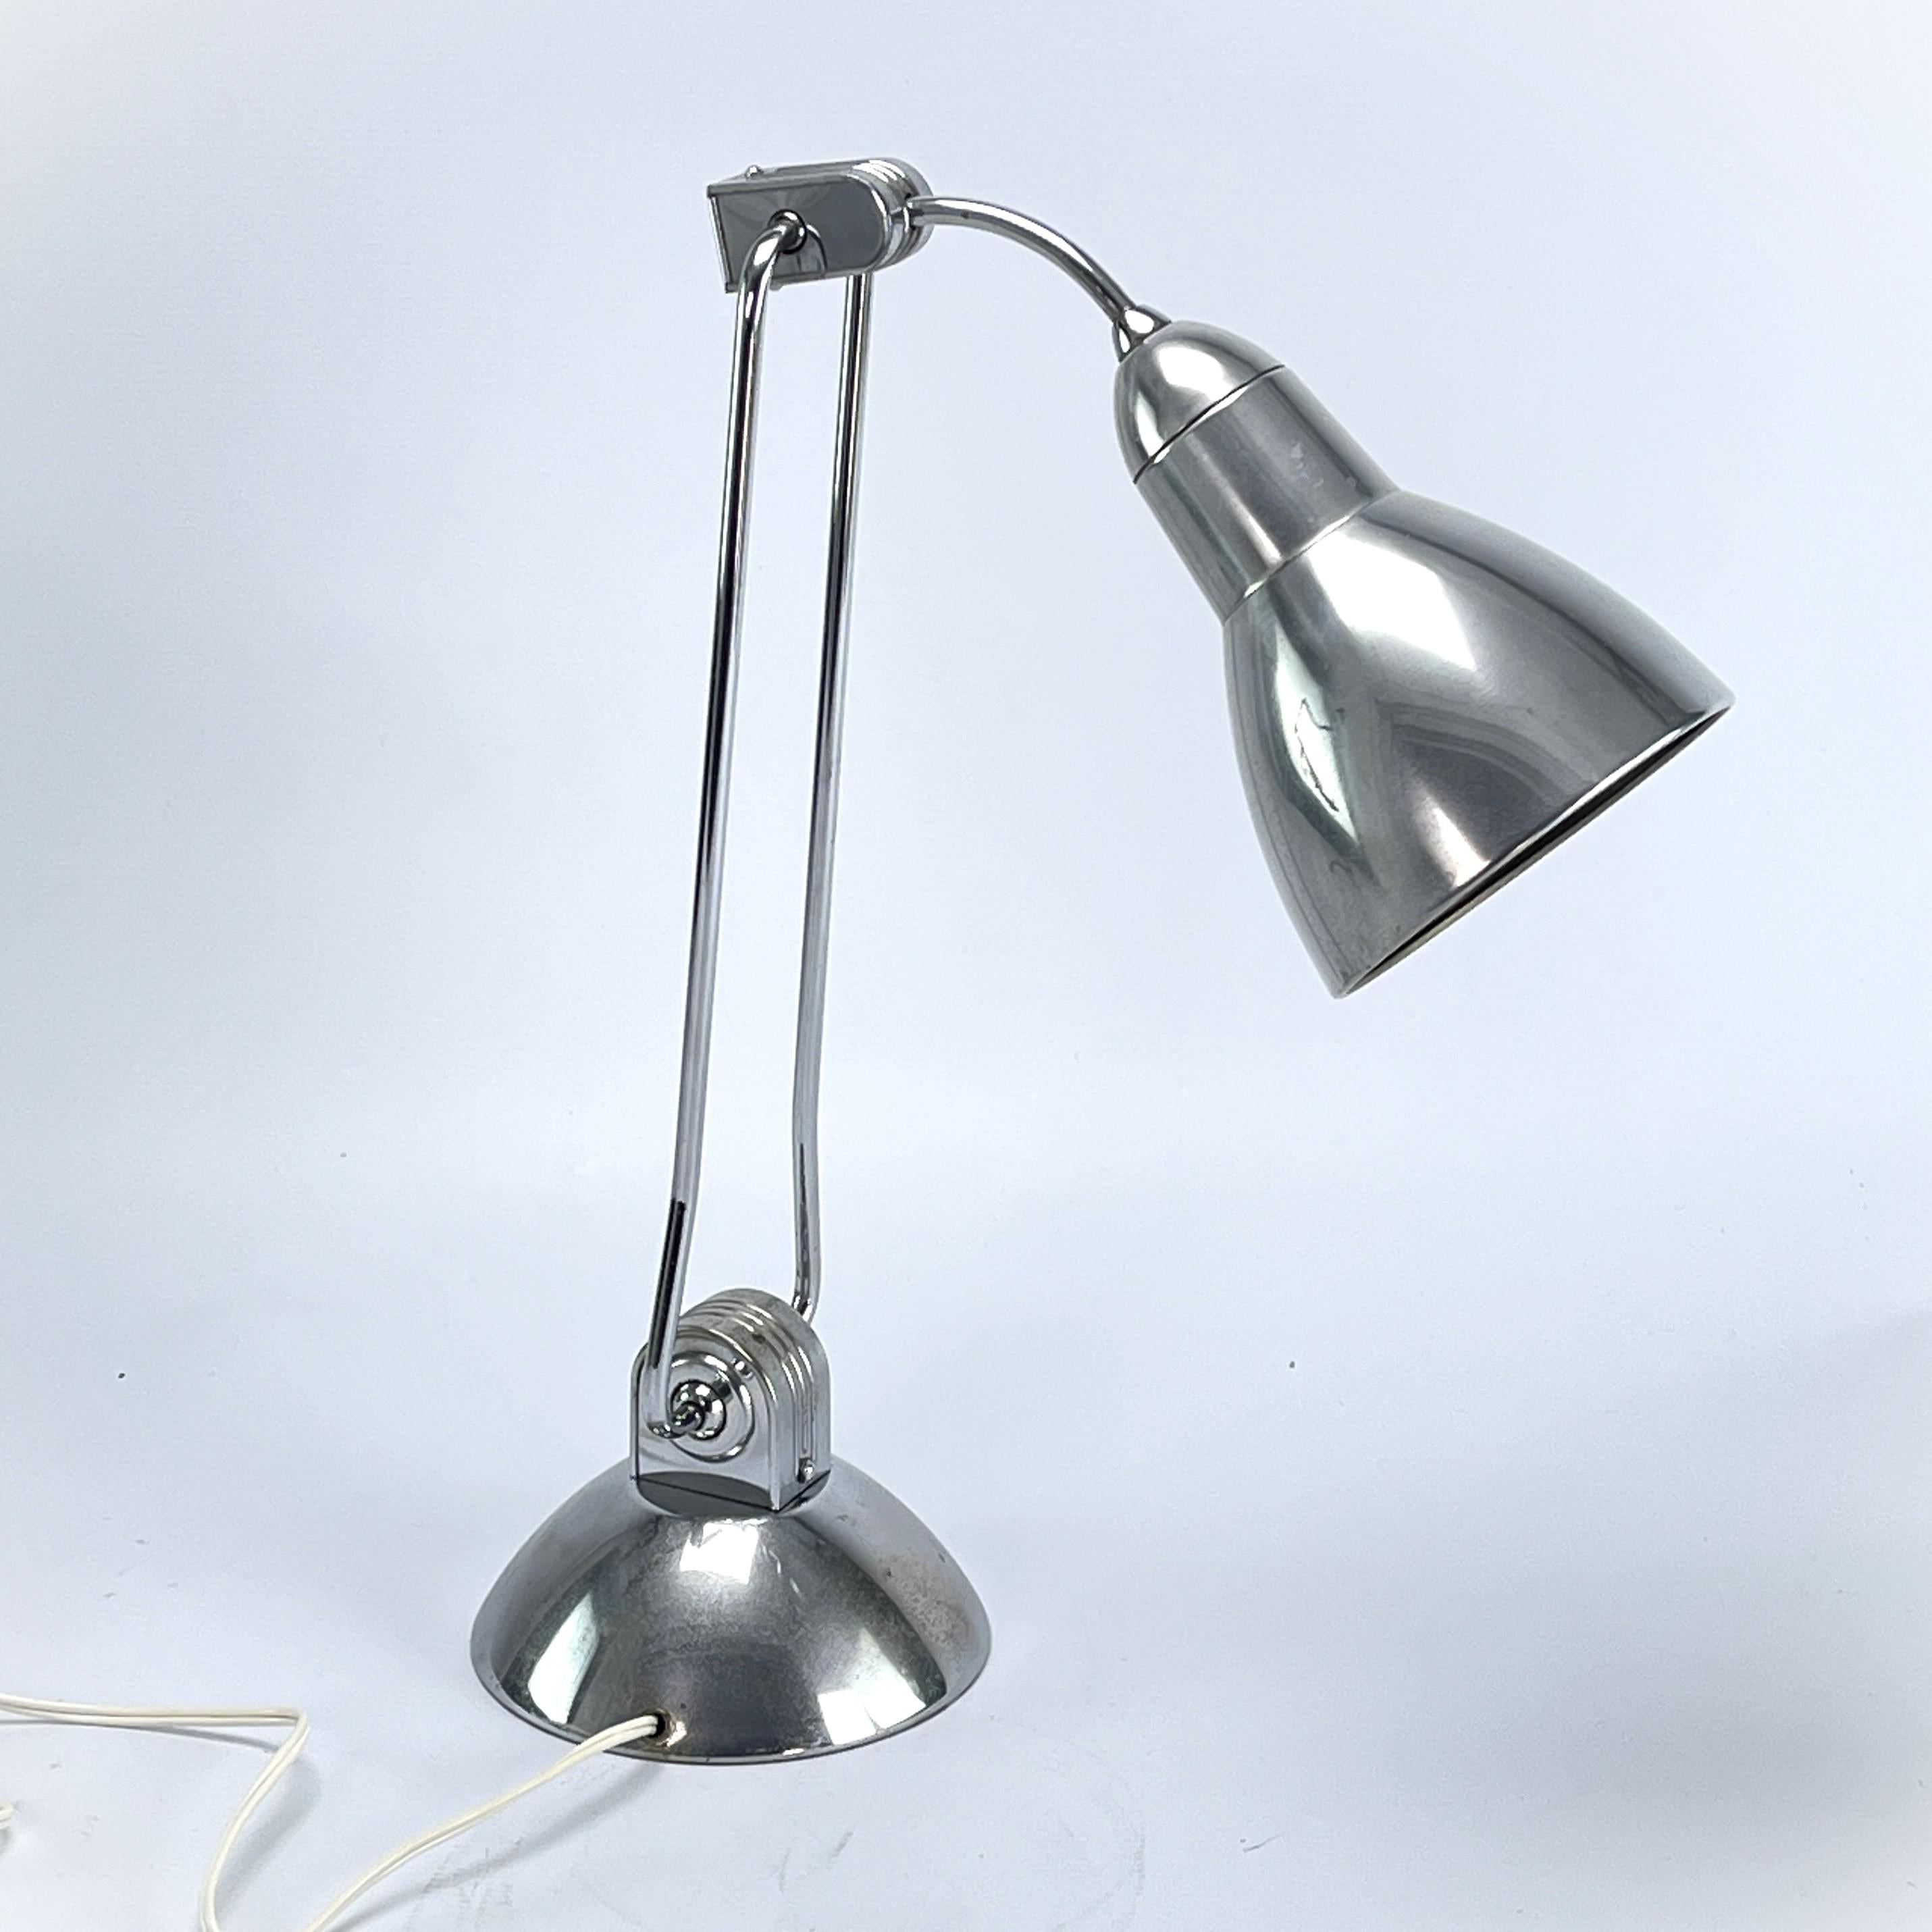 Lampe de table Art Déco de JUMO - années 1930

La lampe de table a été conçue par la designer française Charlotte Perriand pour Jumo. Charlotte Perriand pour Jumo.
Ce modèle est une version rare (de 1930). La lampe moderniste en tube d'acier chromé